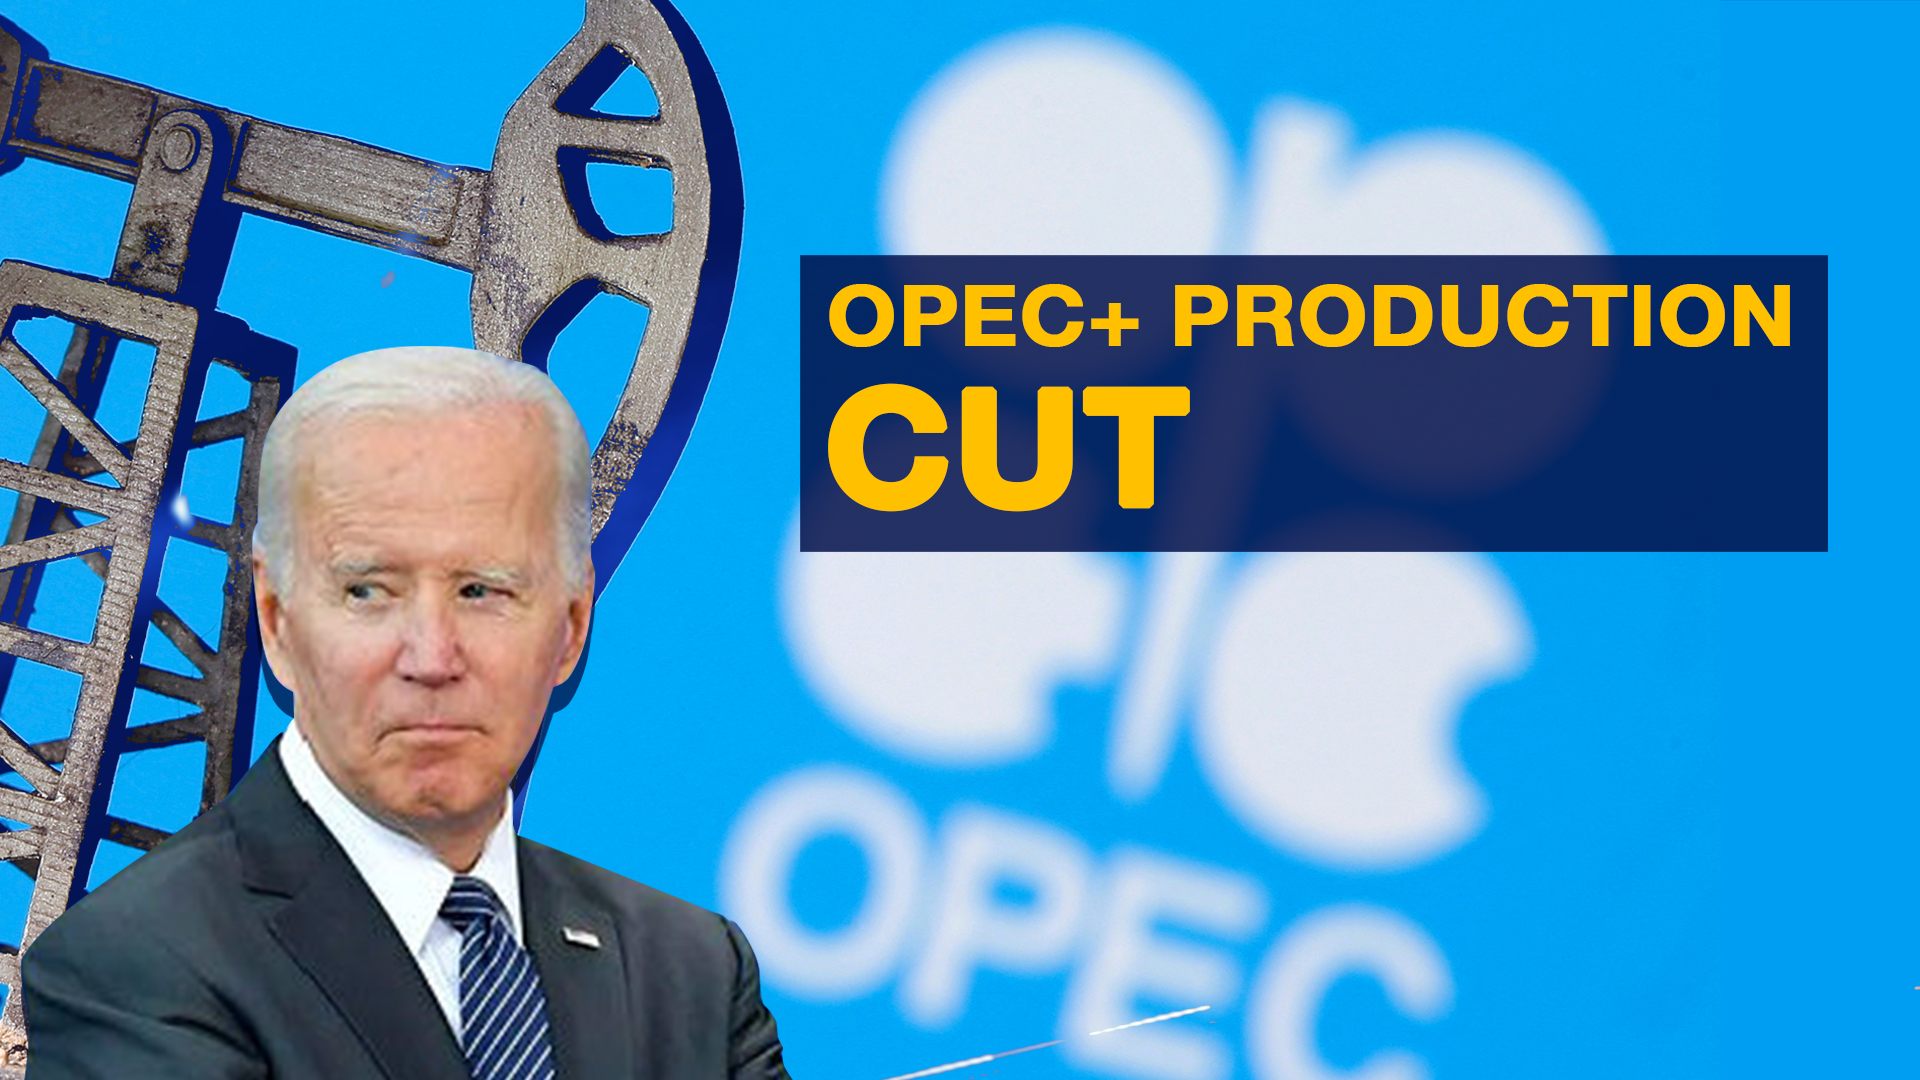 OPEC+ major production cut